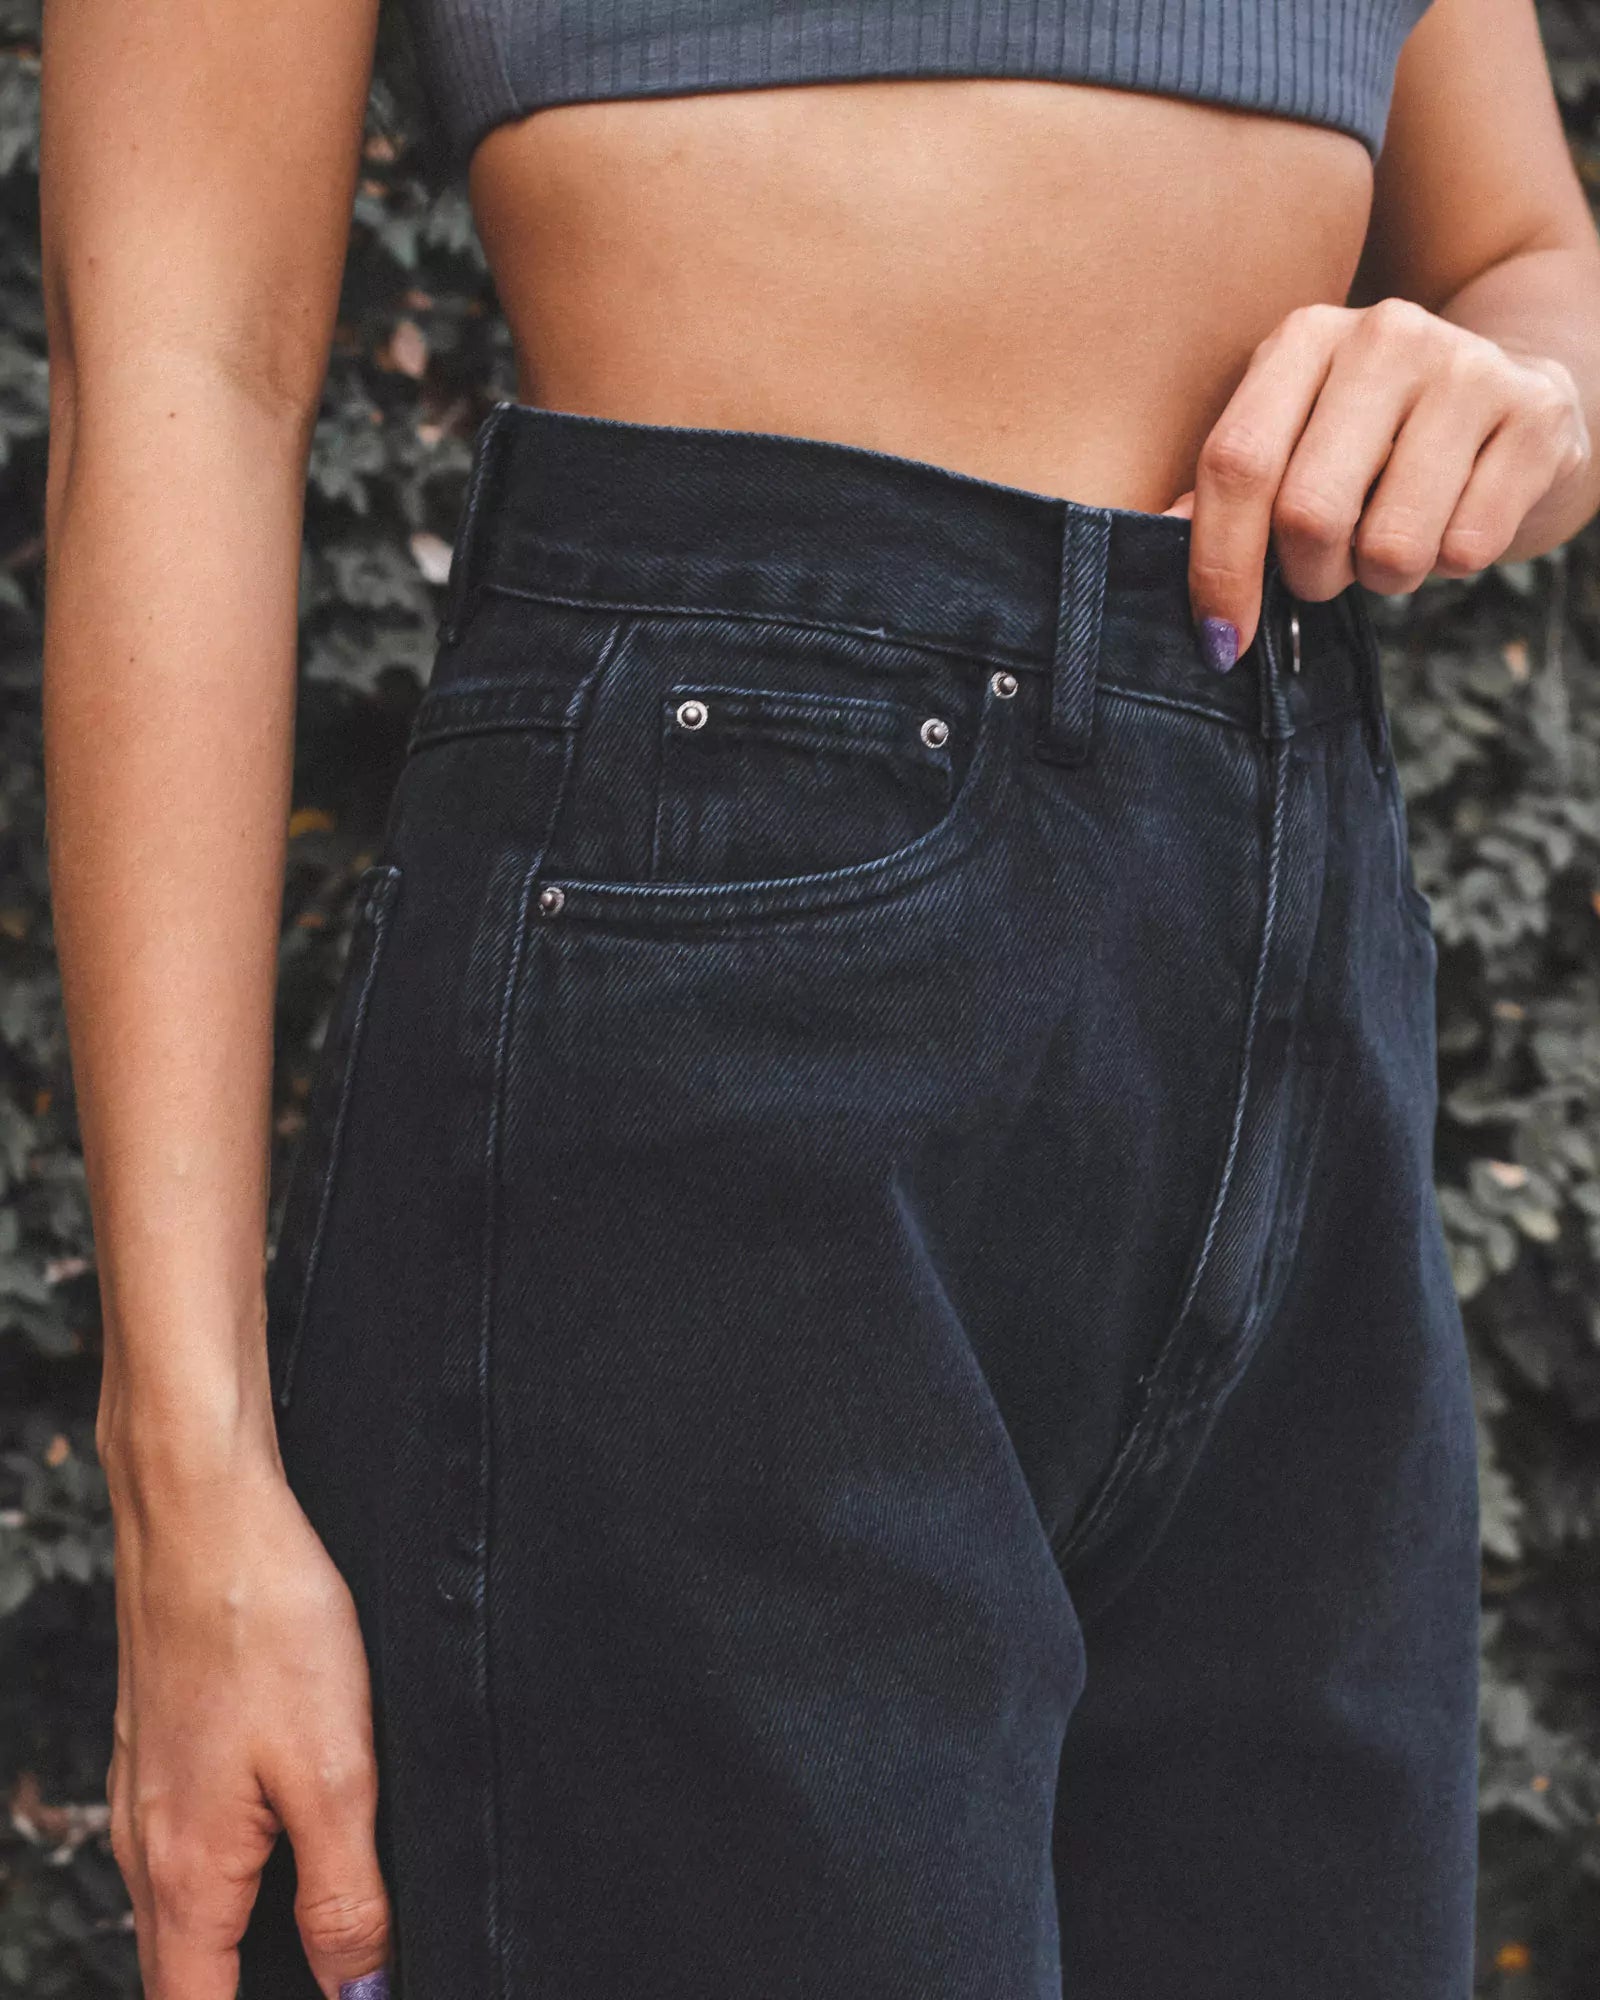 Calça Jeans Wide Leg Preto Eco Denim™. Compre online moda sustentável e atemporal na Minimadeia. Roupas femininas estilosas, básicas e sustentáveis. Foto produto 04